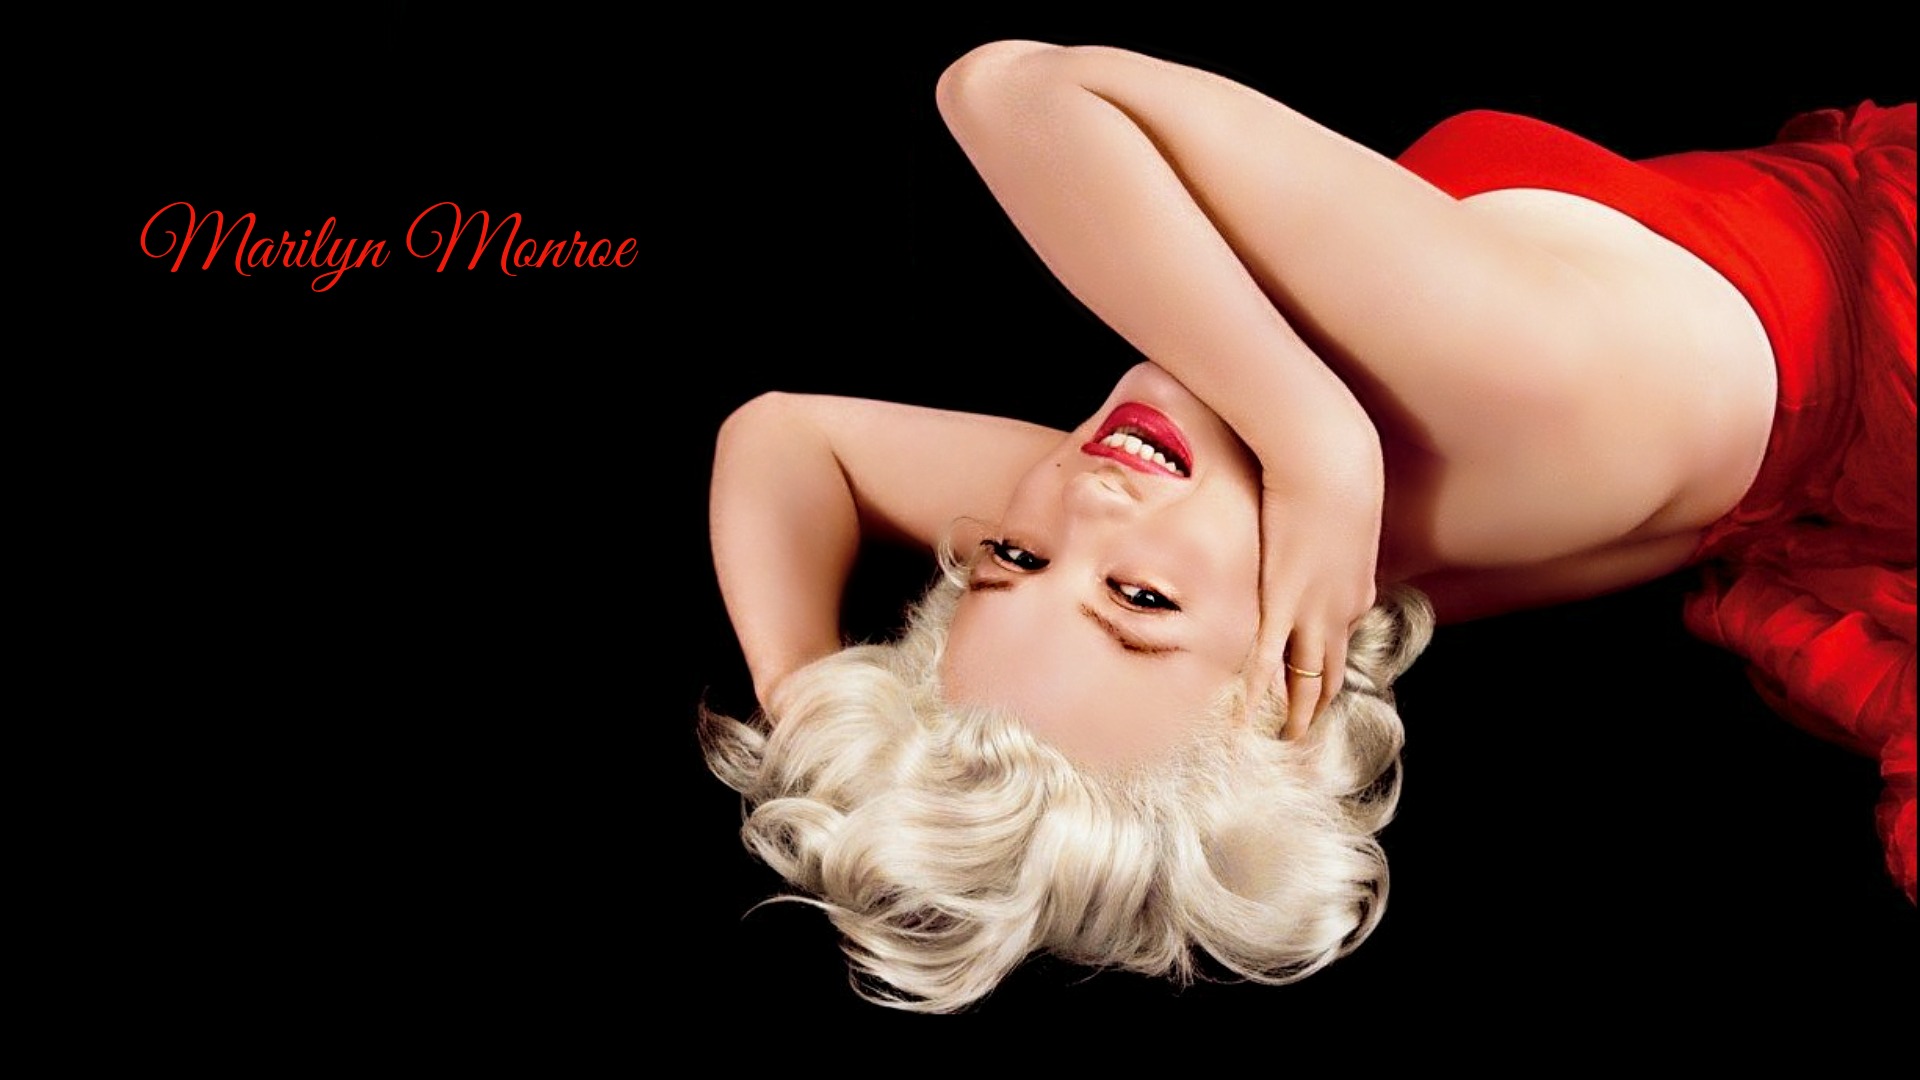 Celebrity Marilyn Monroe 1920x1080